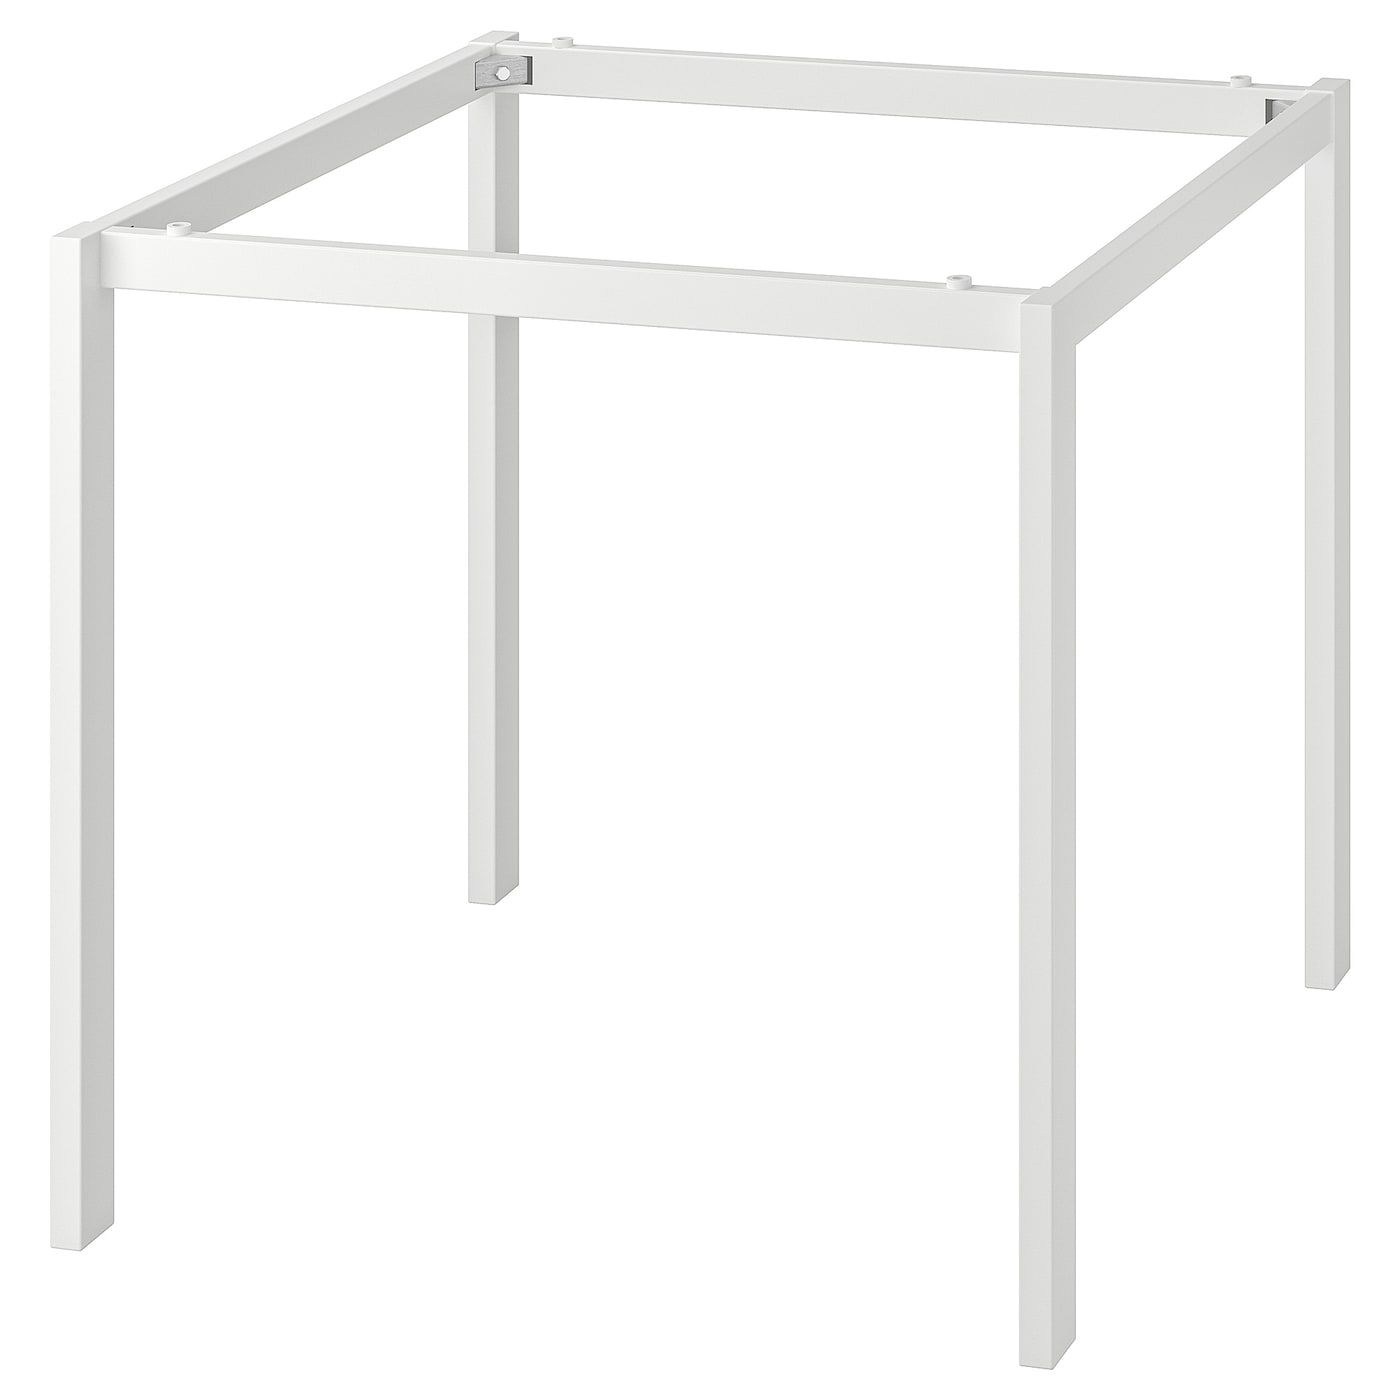 Основание обеденного стола - IKEA MELLTORP, 72x75x75см, белый, МЕЛЬТОРП ИКЕА